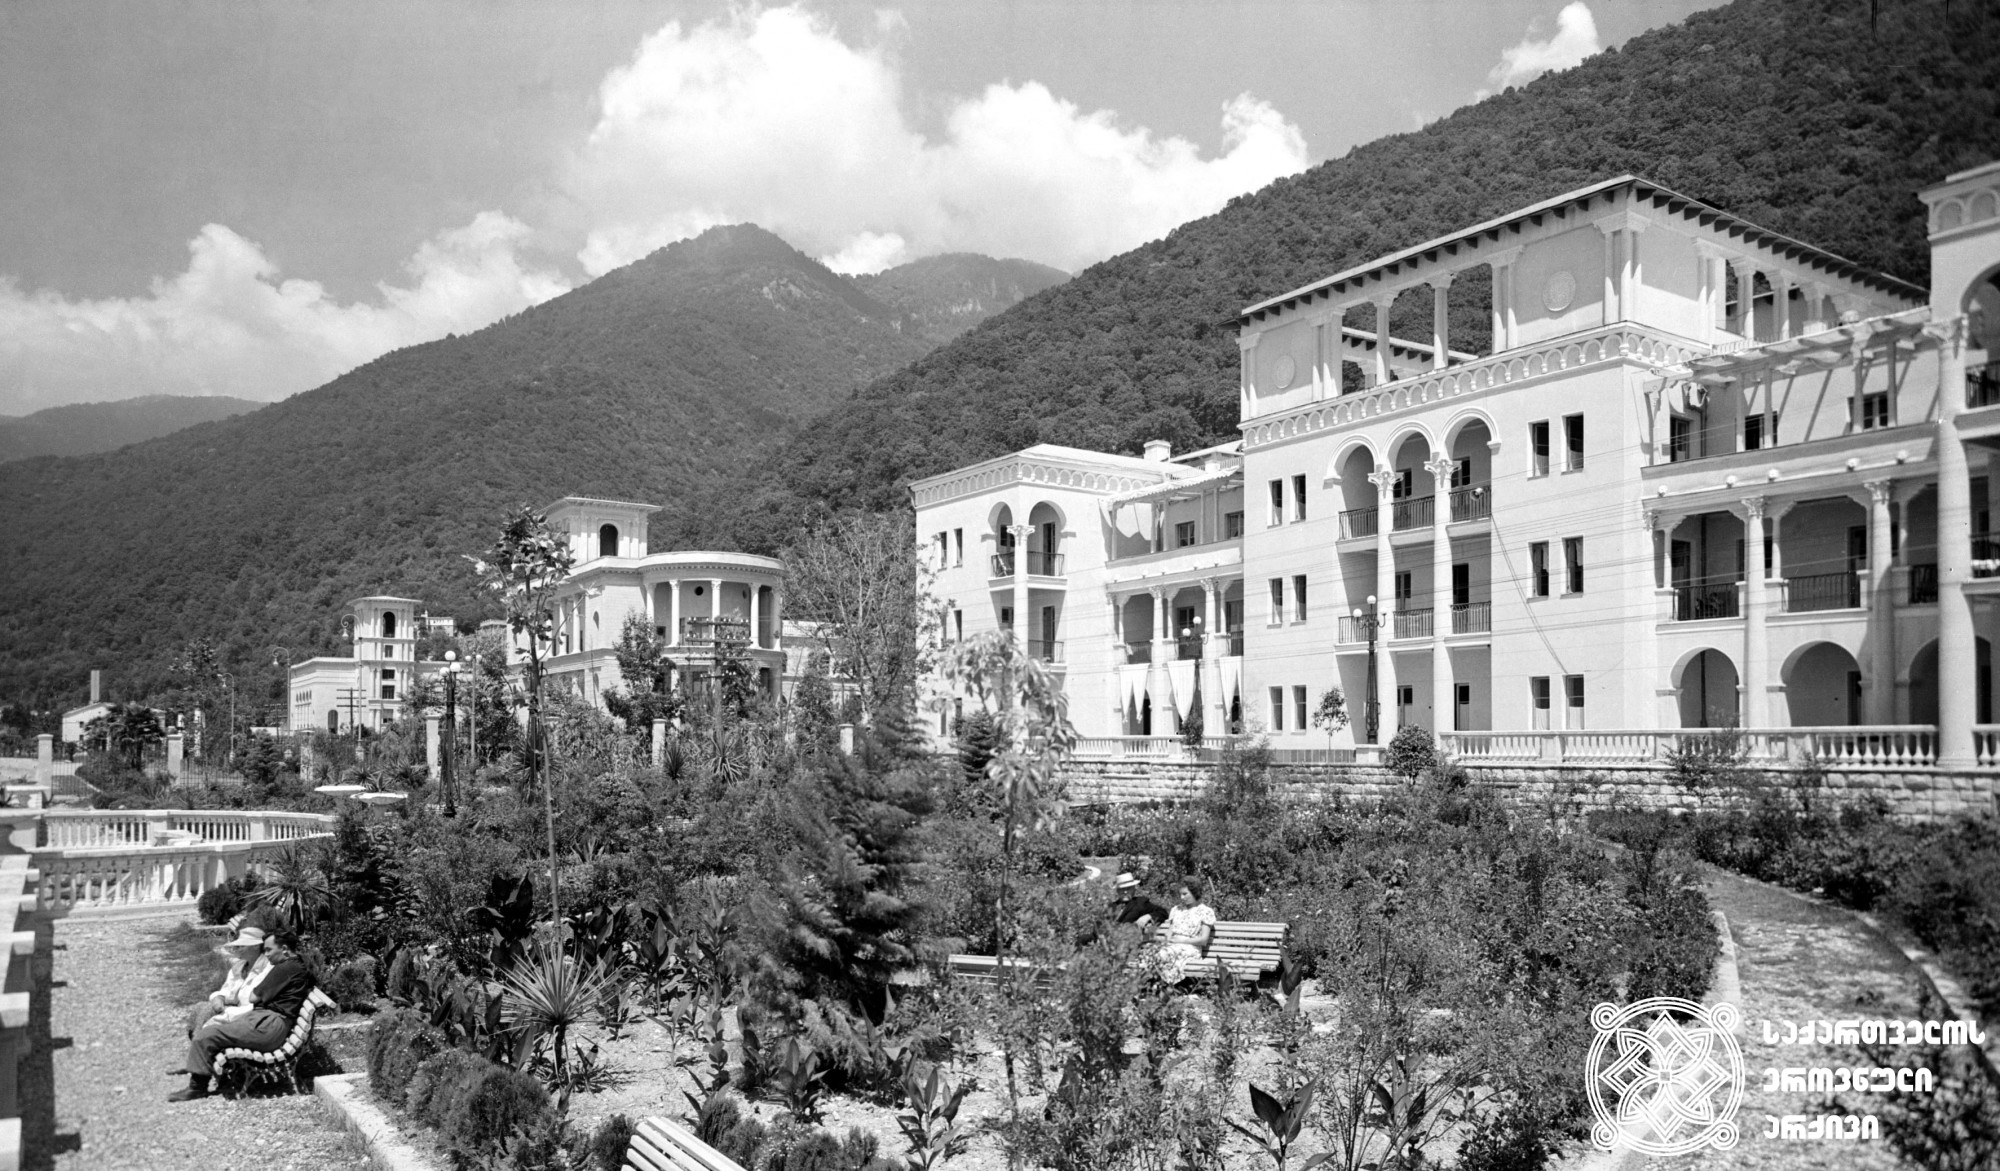 სანატორიუმი „ნეფტიანიკი“. გაგრა, 1955 წელი. <br>
The Sanatorium “Neftyanik”. Gagra, 1955.